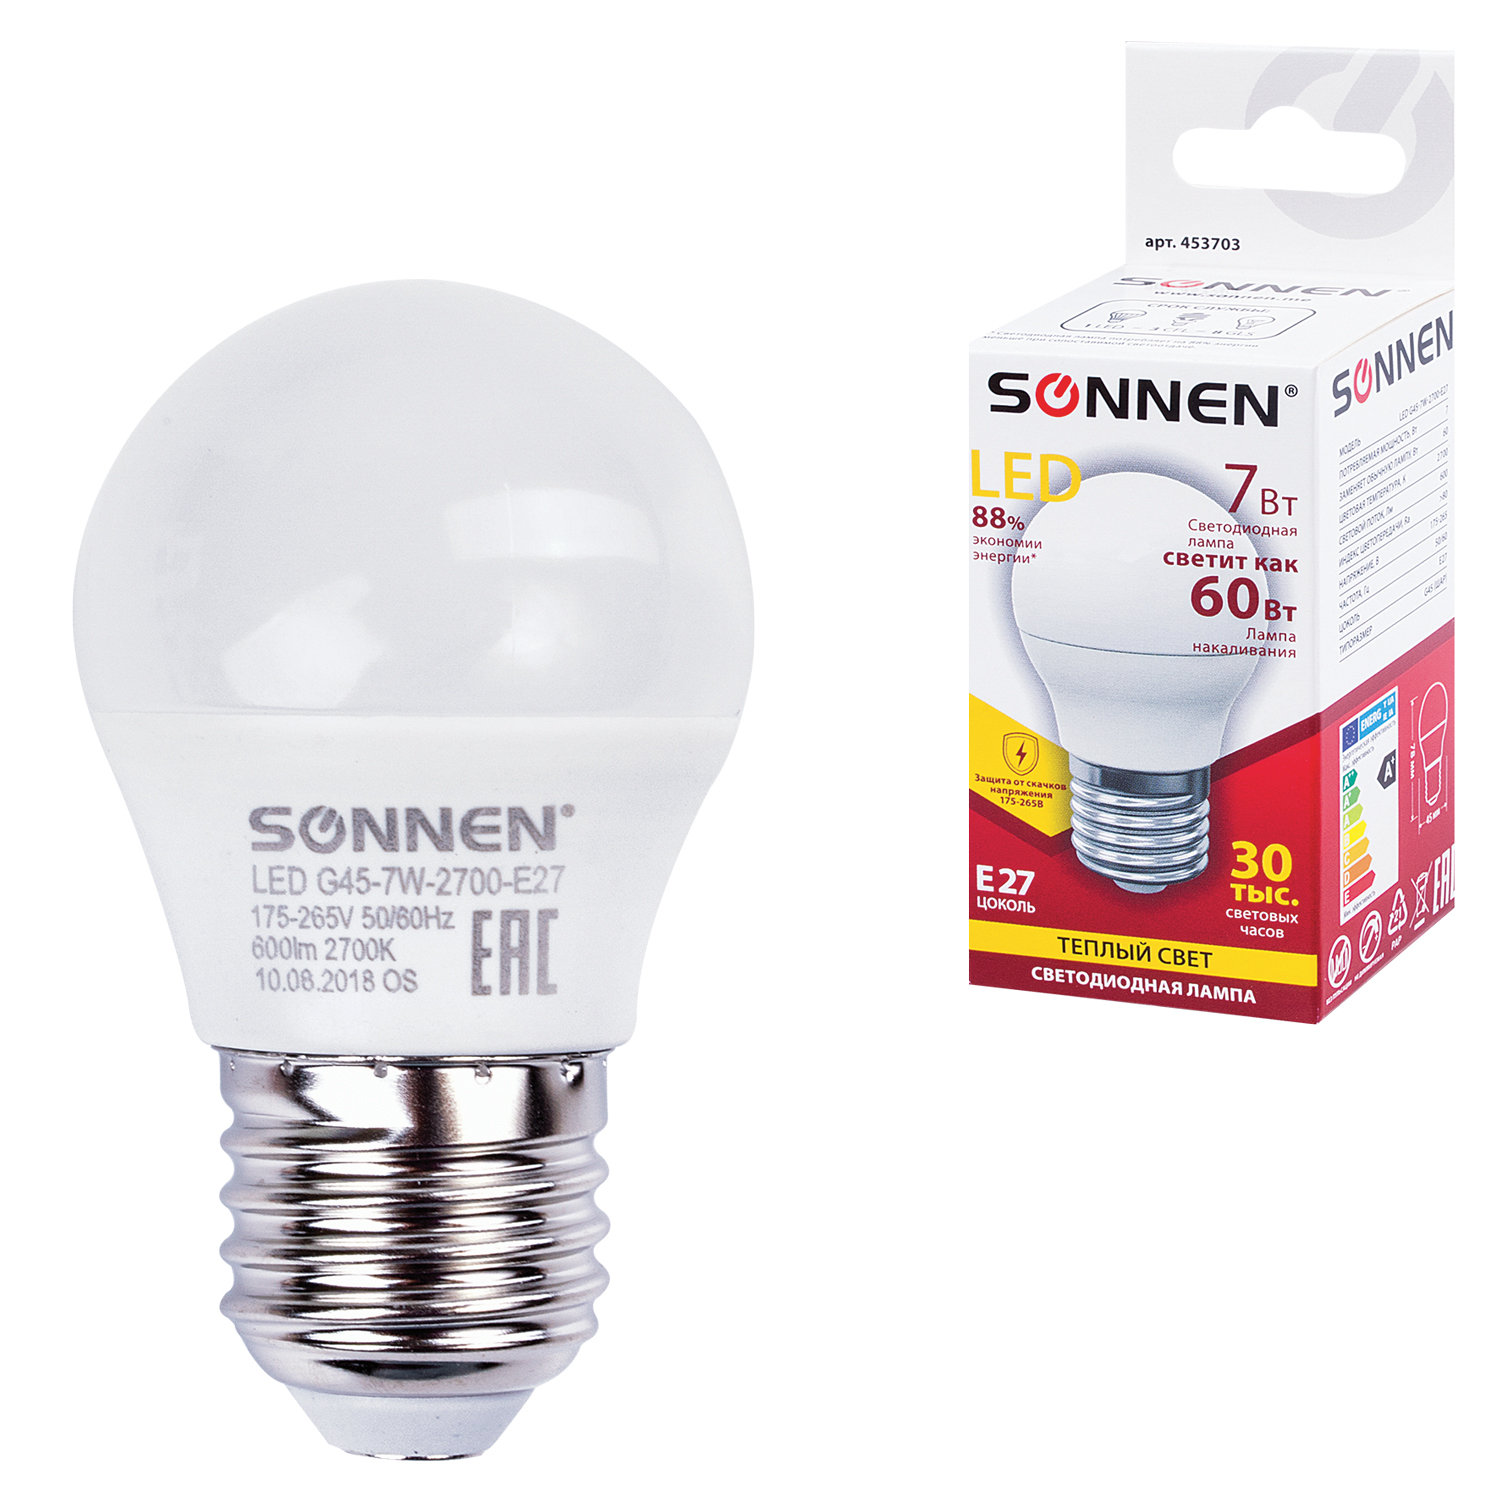 Лампа светодиодная SONNEN, 7 (60) Вт, цоколь E27, шар, теплый белый свет, 30000 ч, LED G45-7W-2700-E27, 453703 купите по выгодной цене